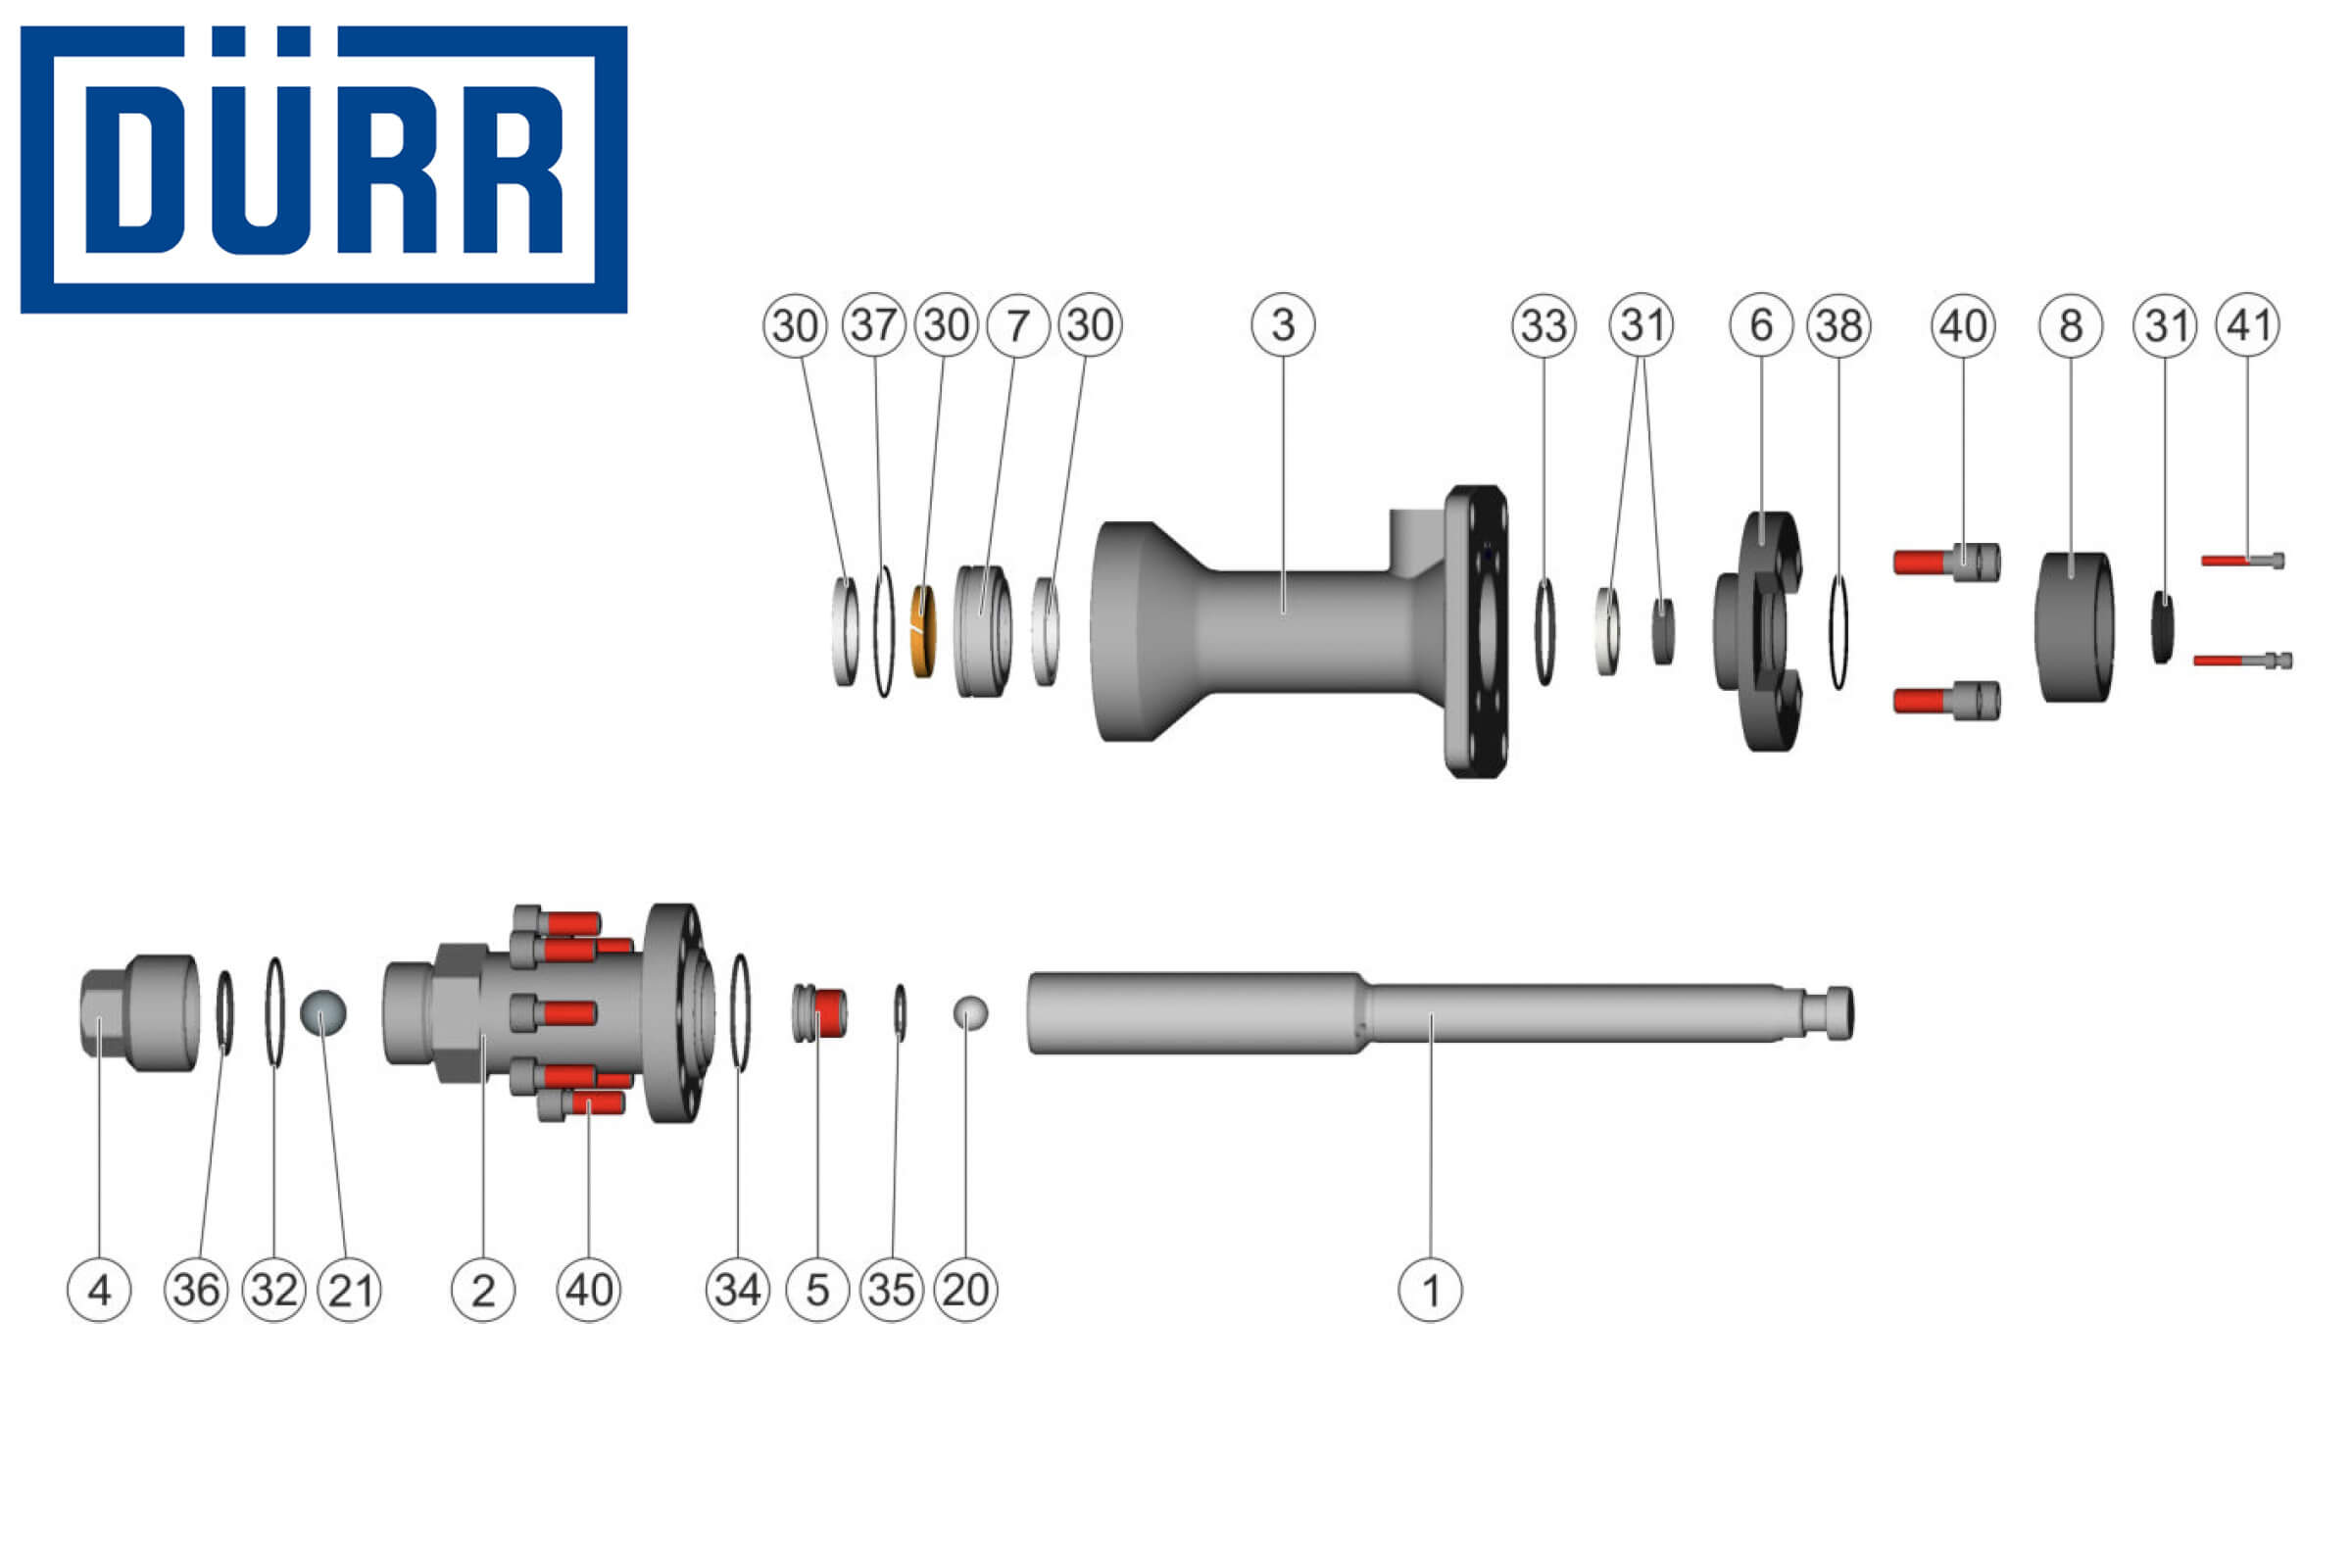 Durr EcoPump2 VP Series Pump Fluid Section Parts Breakdown